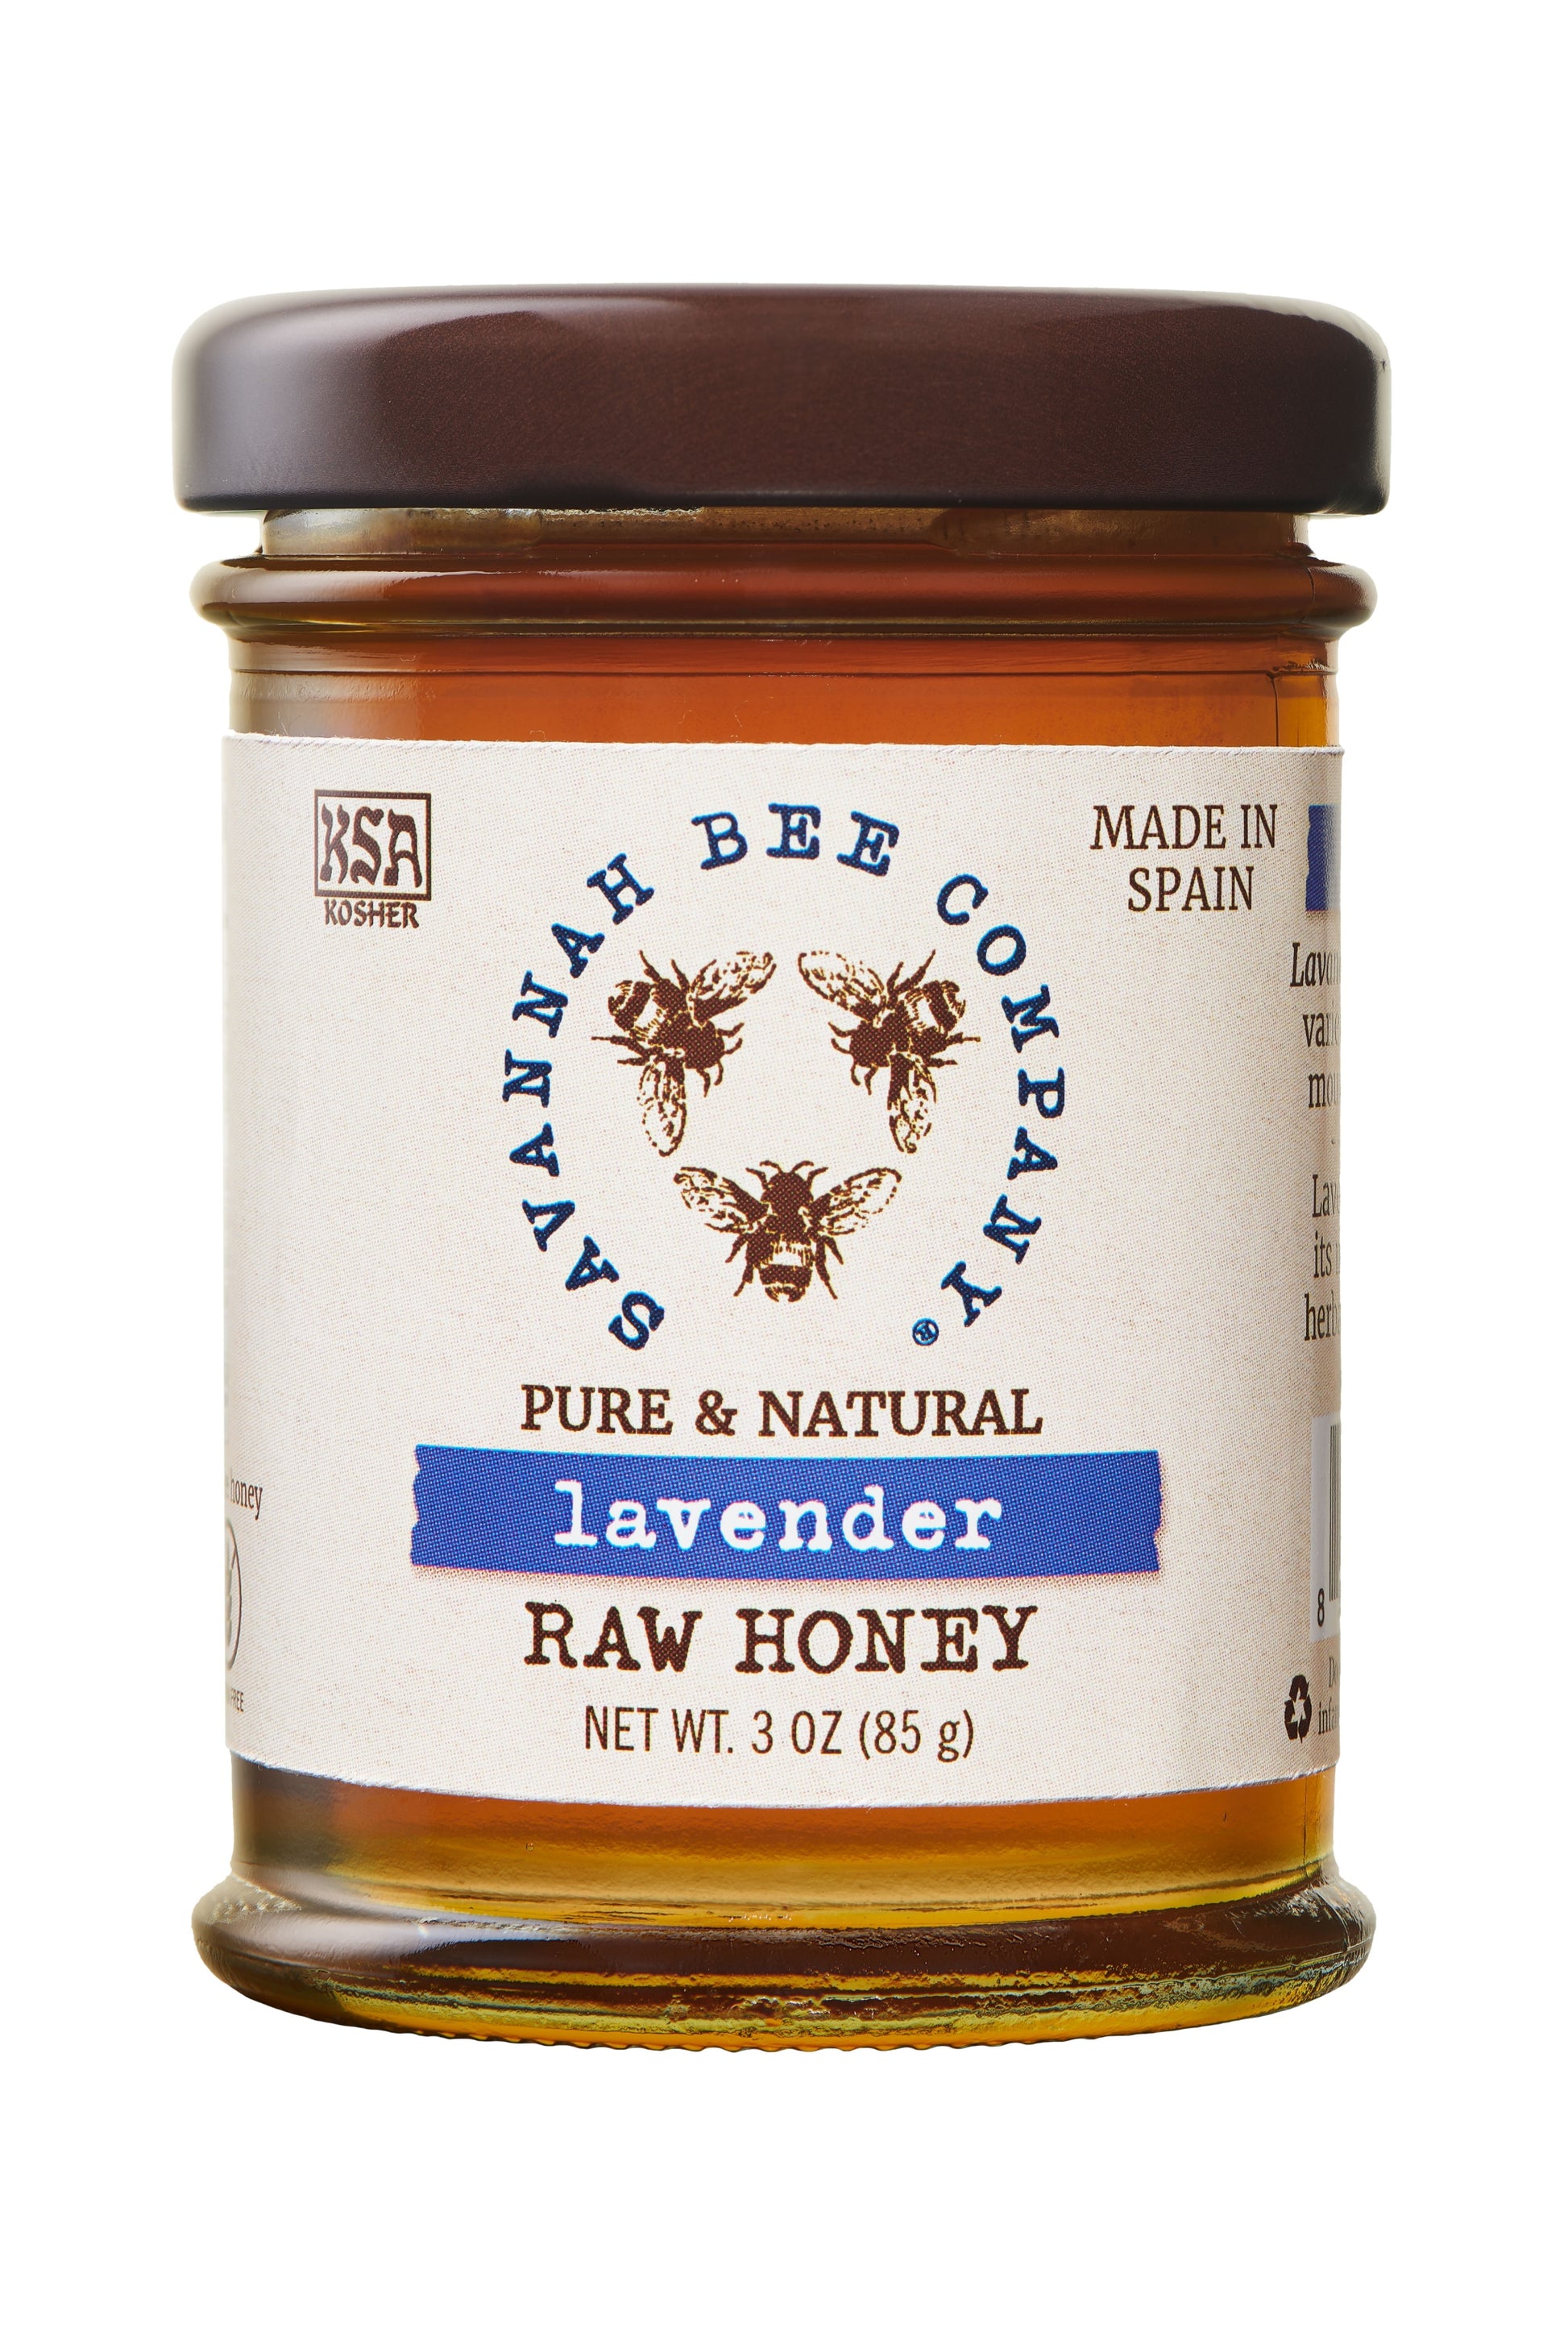 Pure & Natural Lavender Raw Honey 3 oz. mini studio shot.